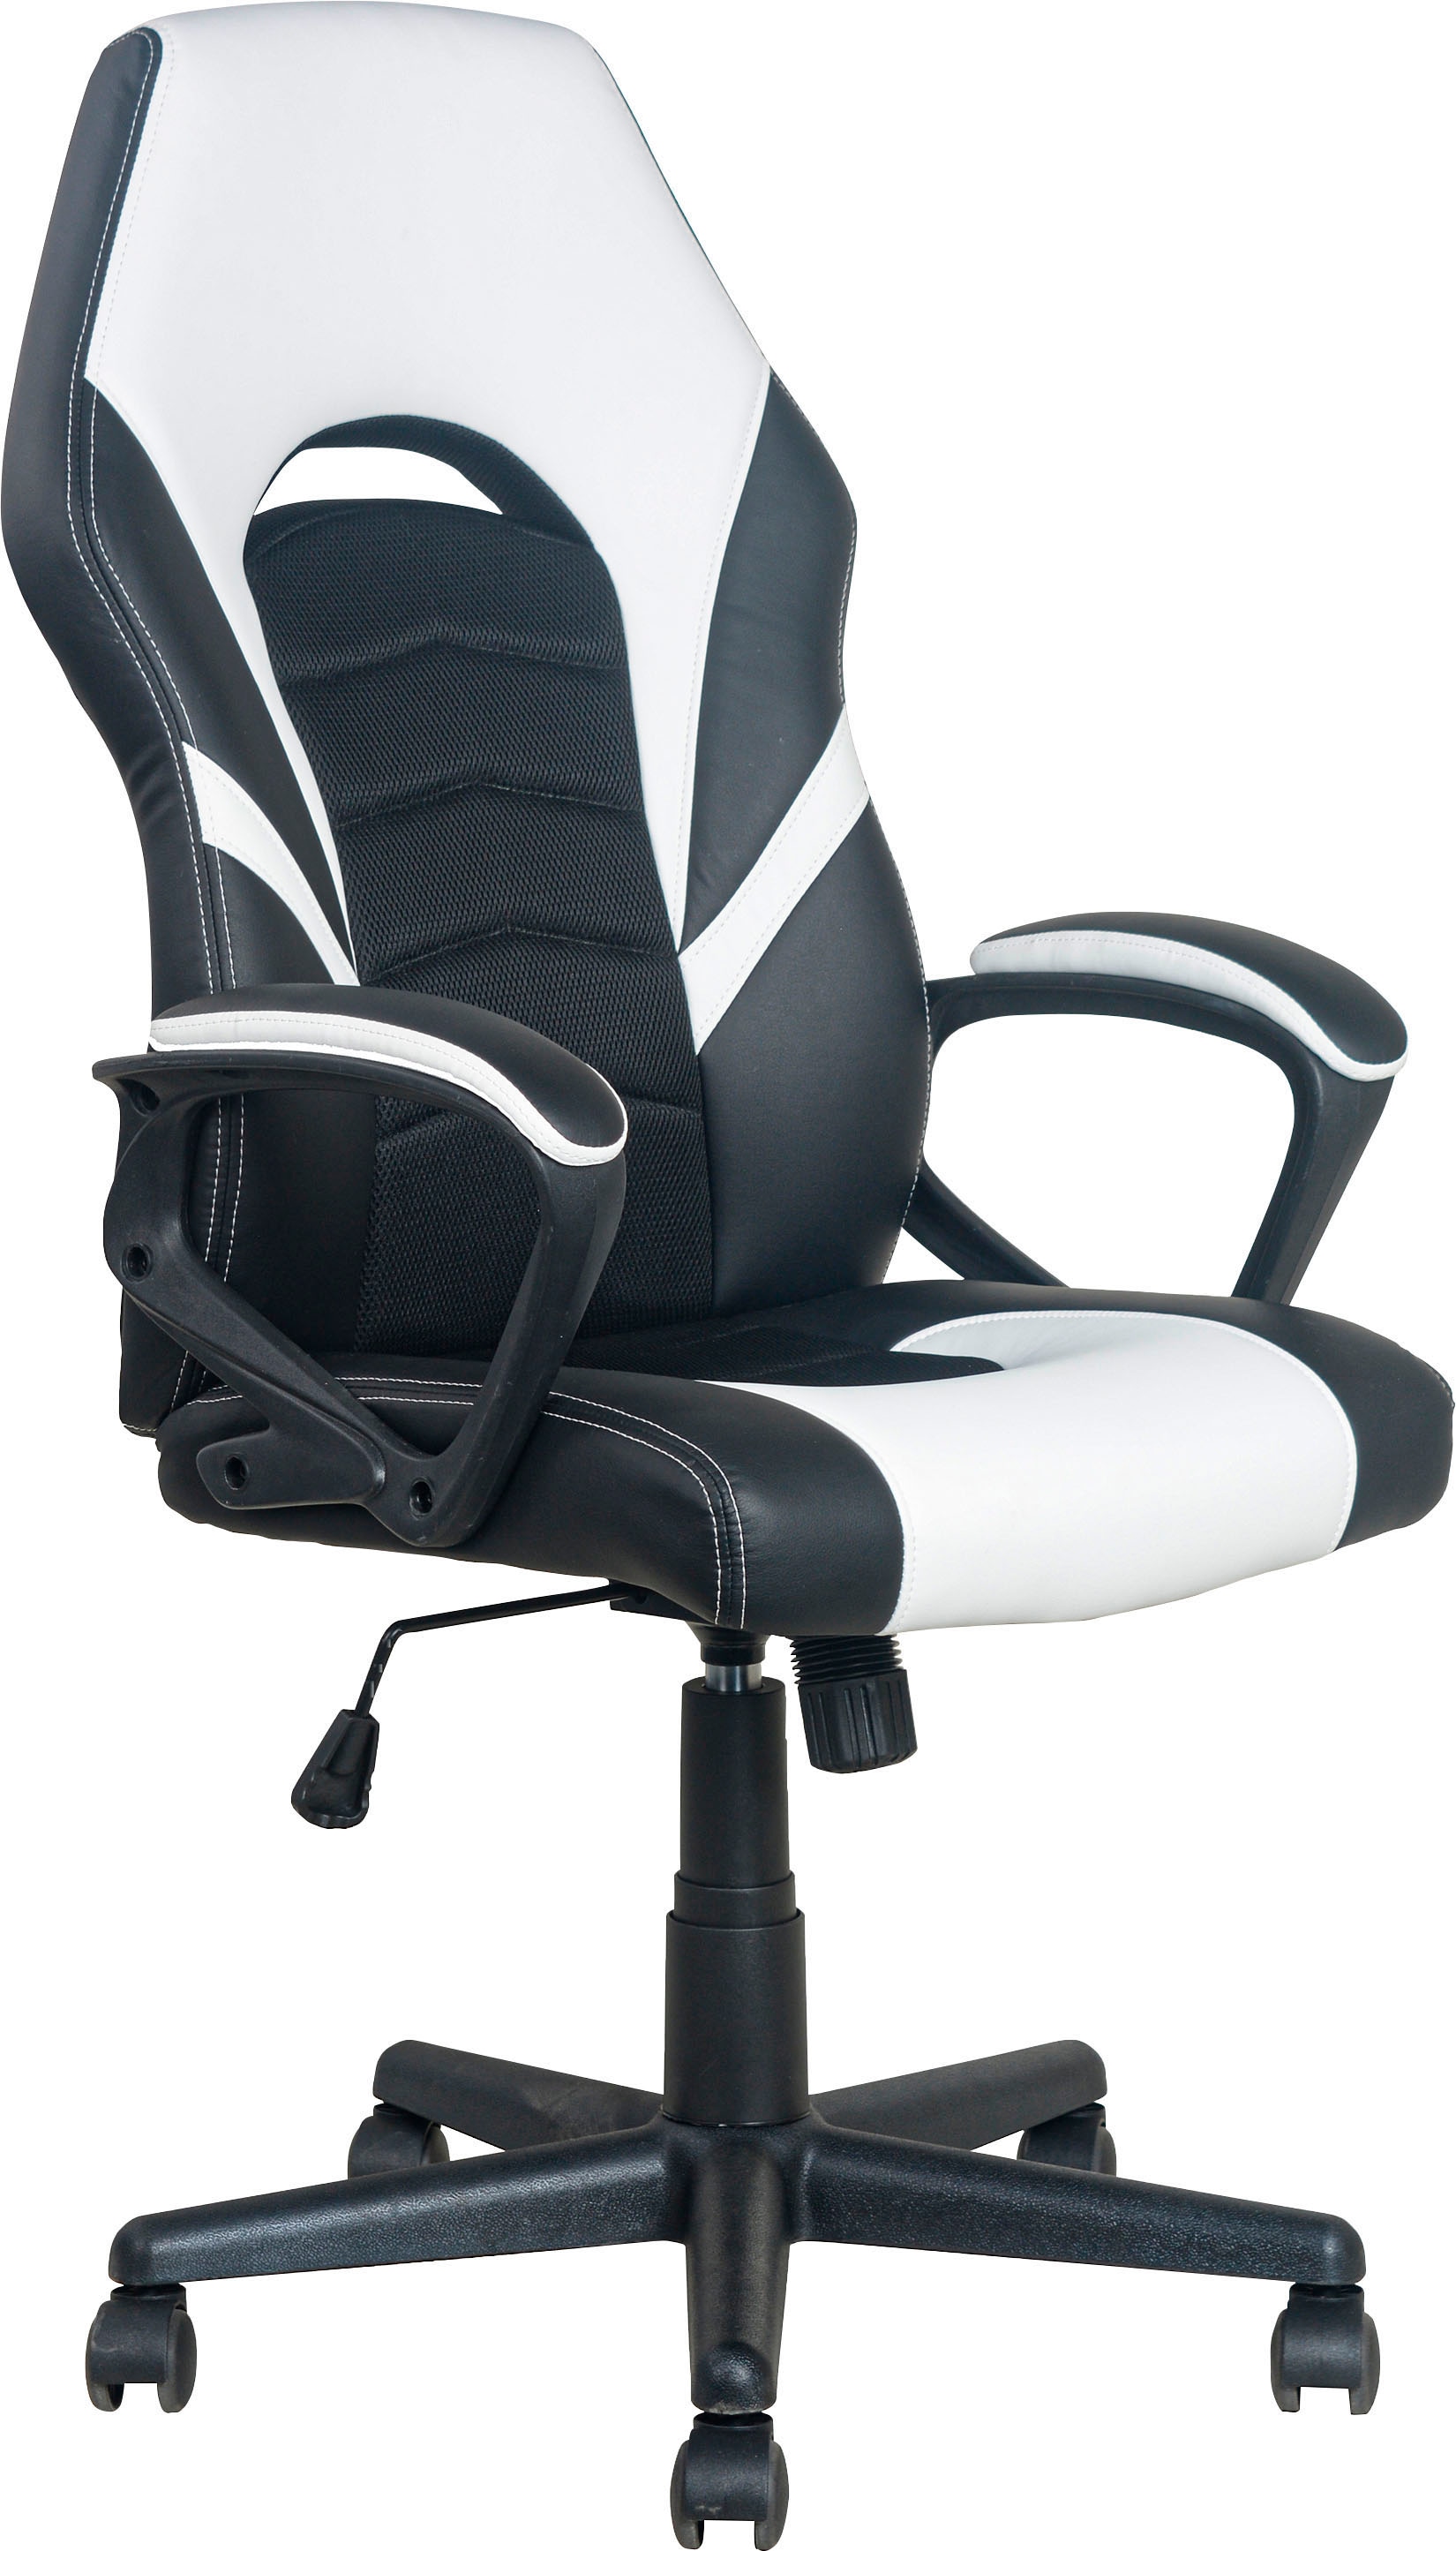 byLIVING Gaming-Stuhl "Freeze", Kunstleder-Netzstoff, verstellbarer Schreibtischstuhl, Wippmechanik mit Härtegradeinstel